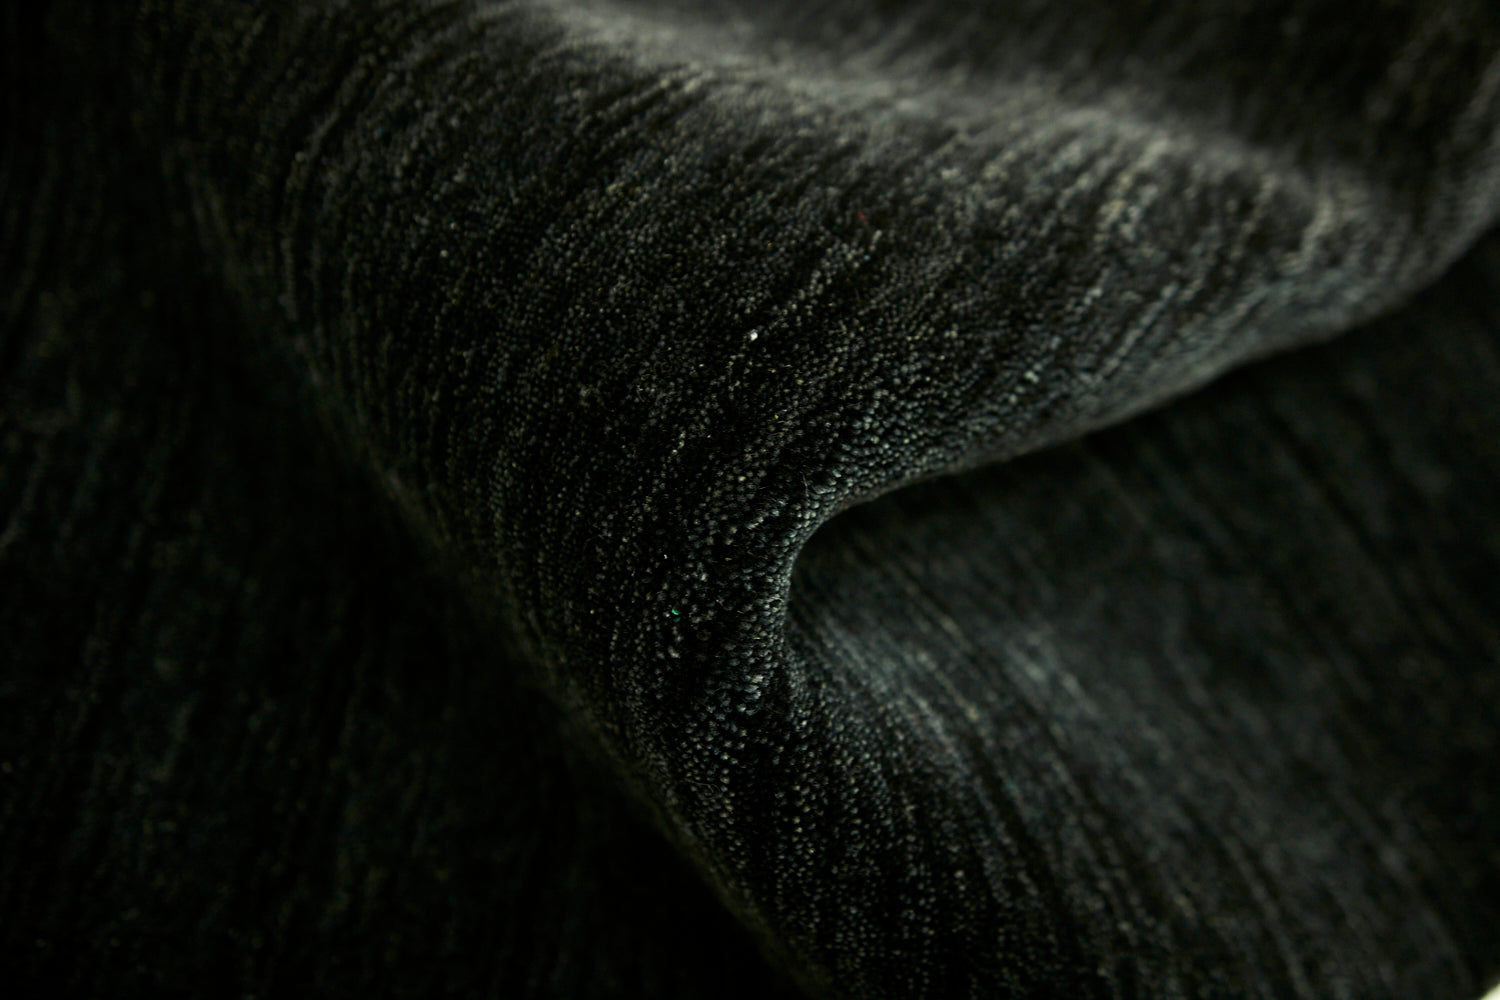 plain black wool area rug